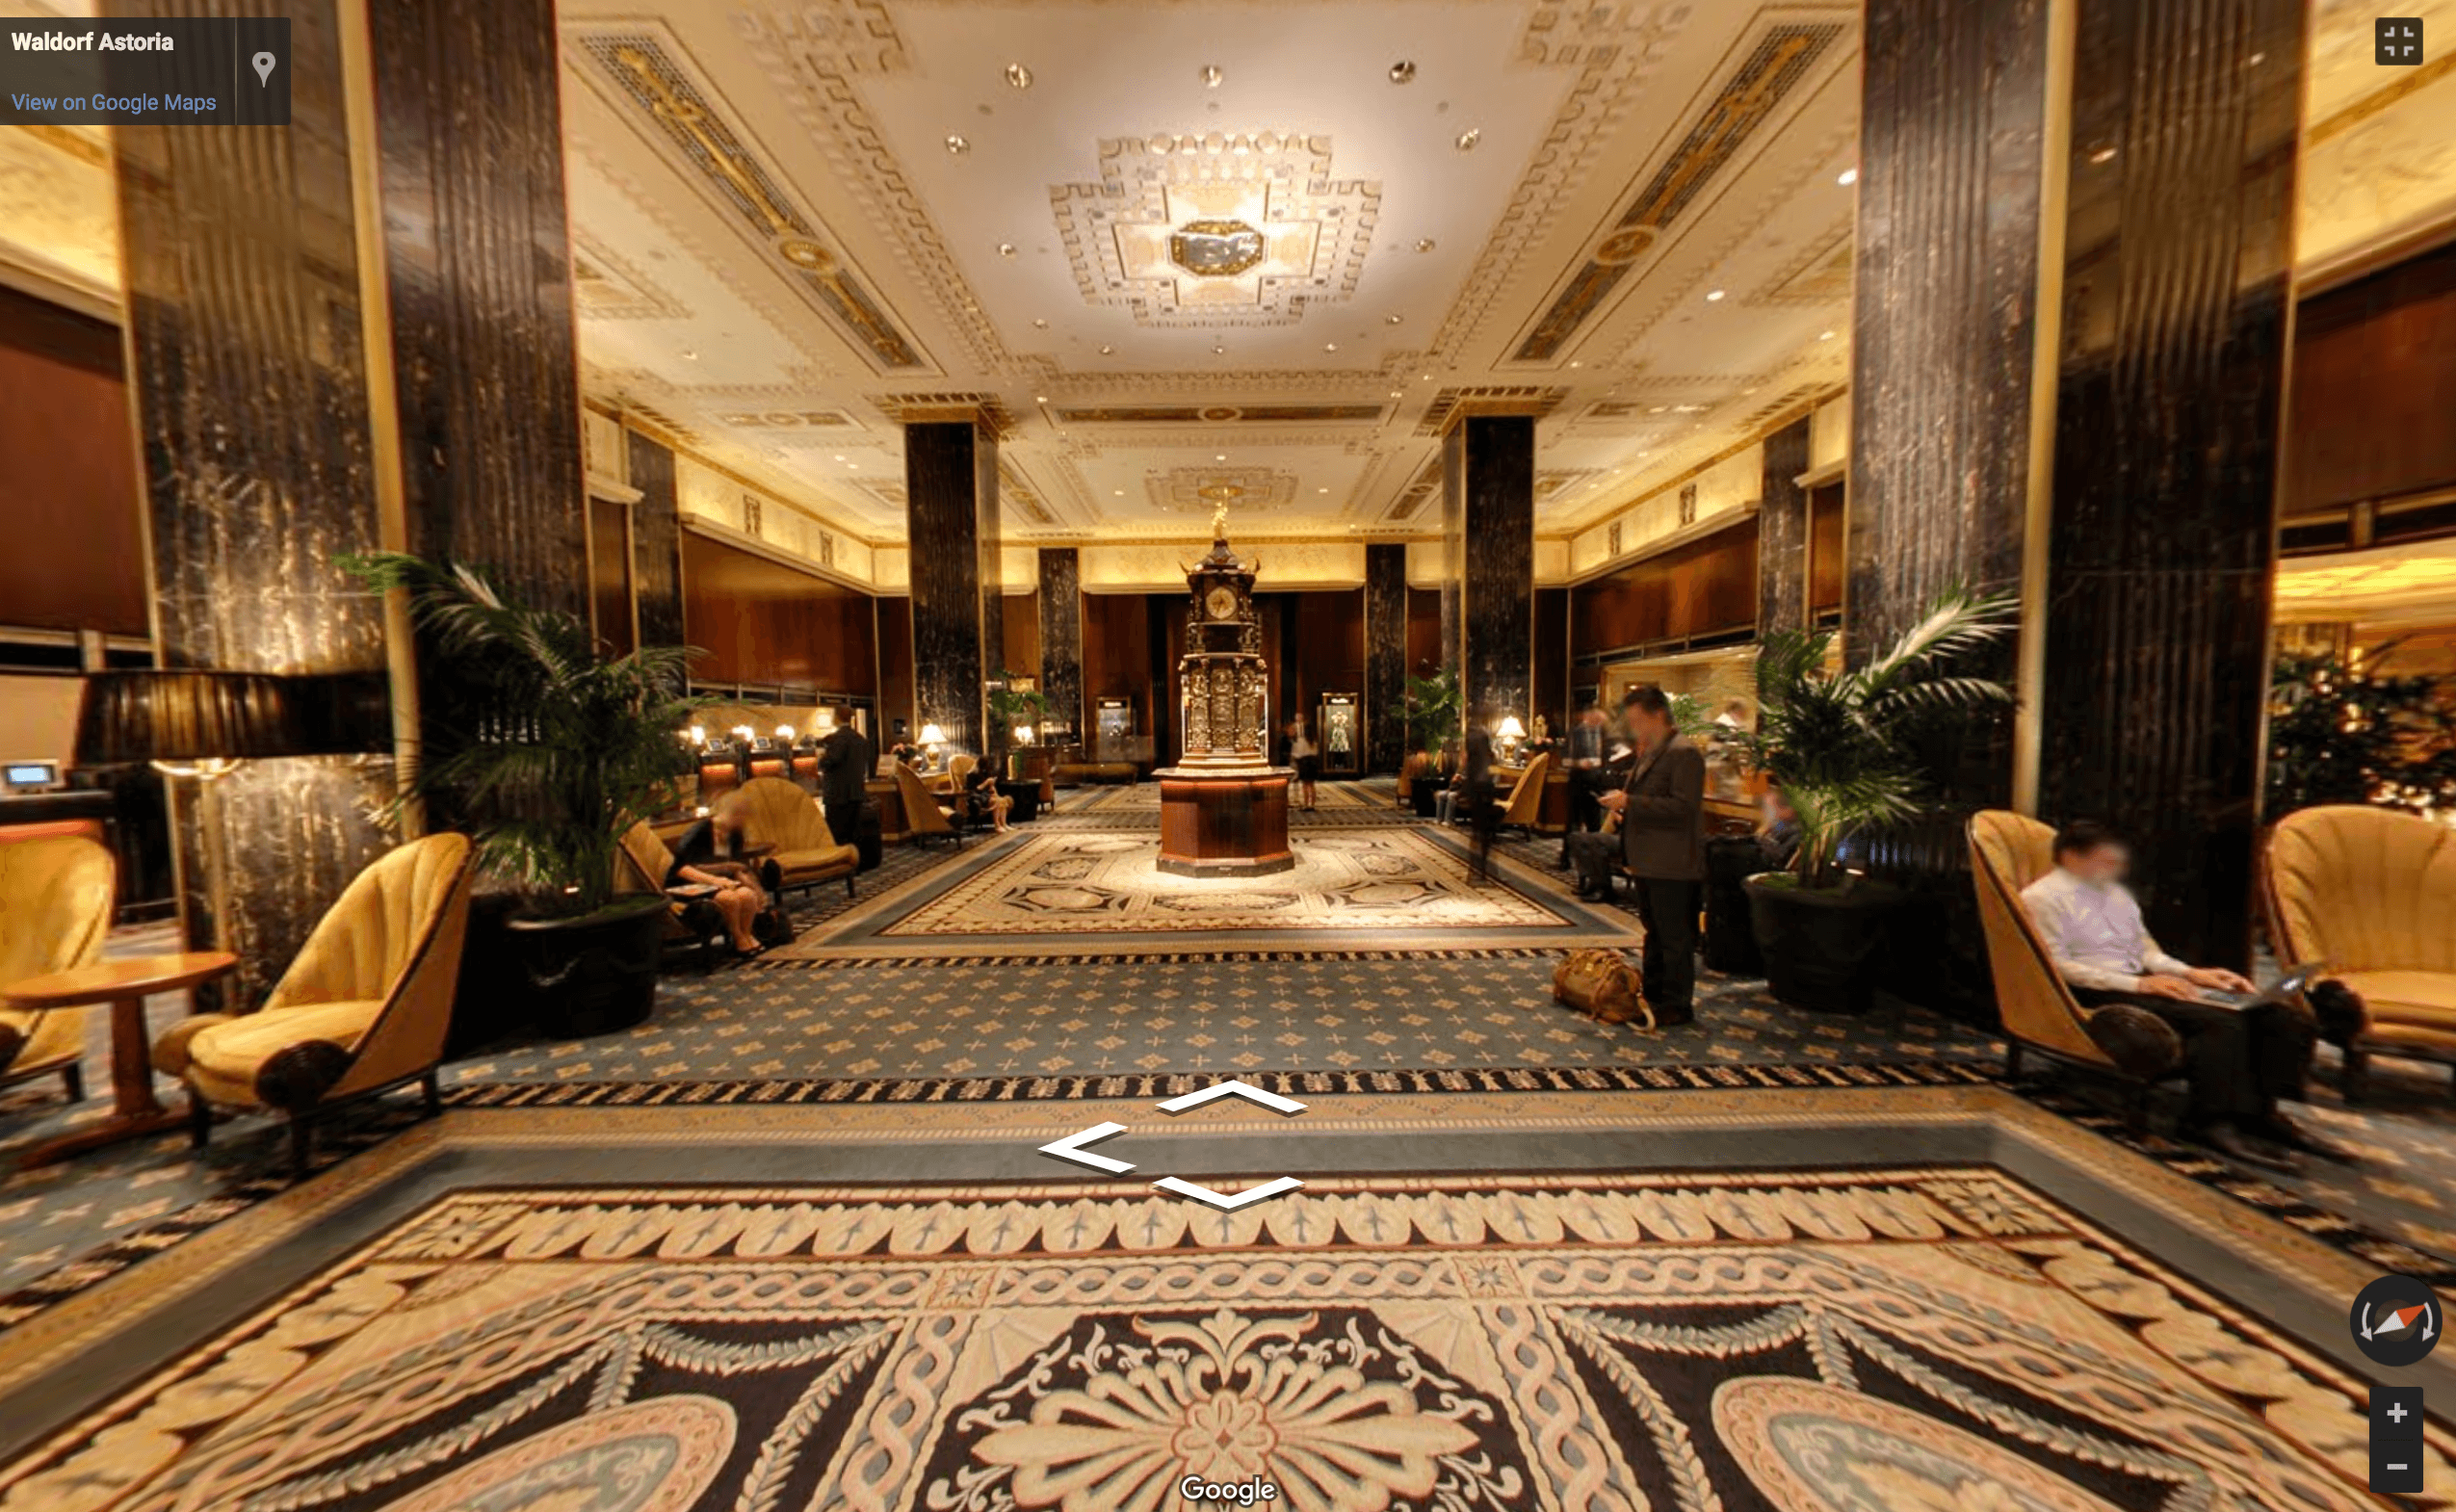 Take A Virtual Tour Of The Waldorf Astorias Freshly Landmarked Interiors 6sqft 2005